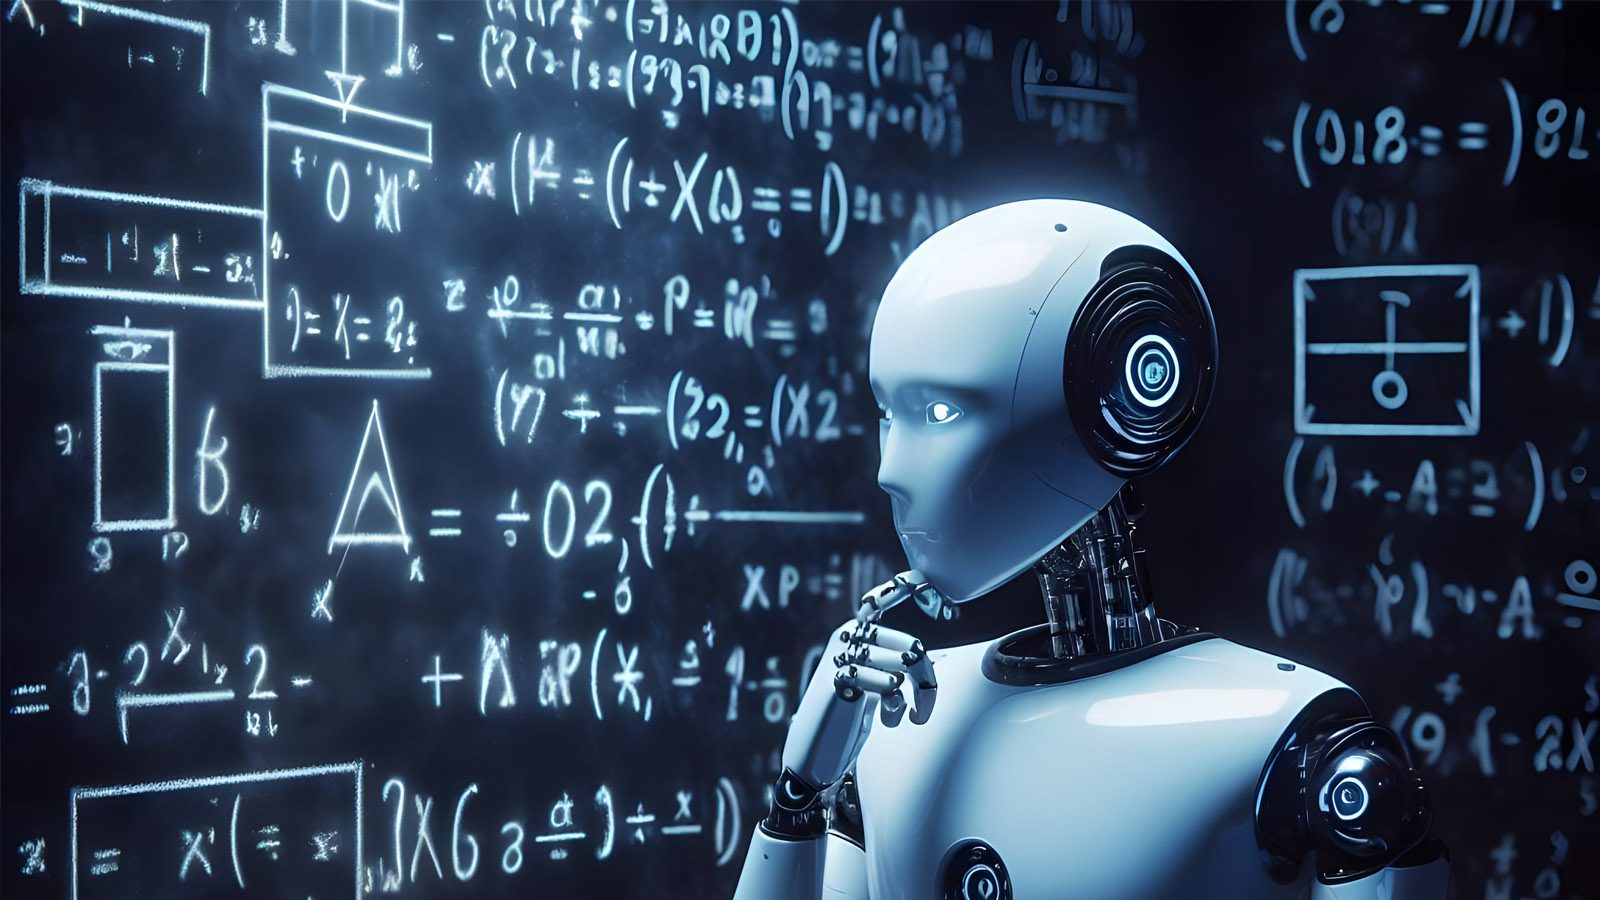 Vertice sull’intelligenza artificiale: accordi, proposte, regole e sviluppo